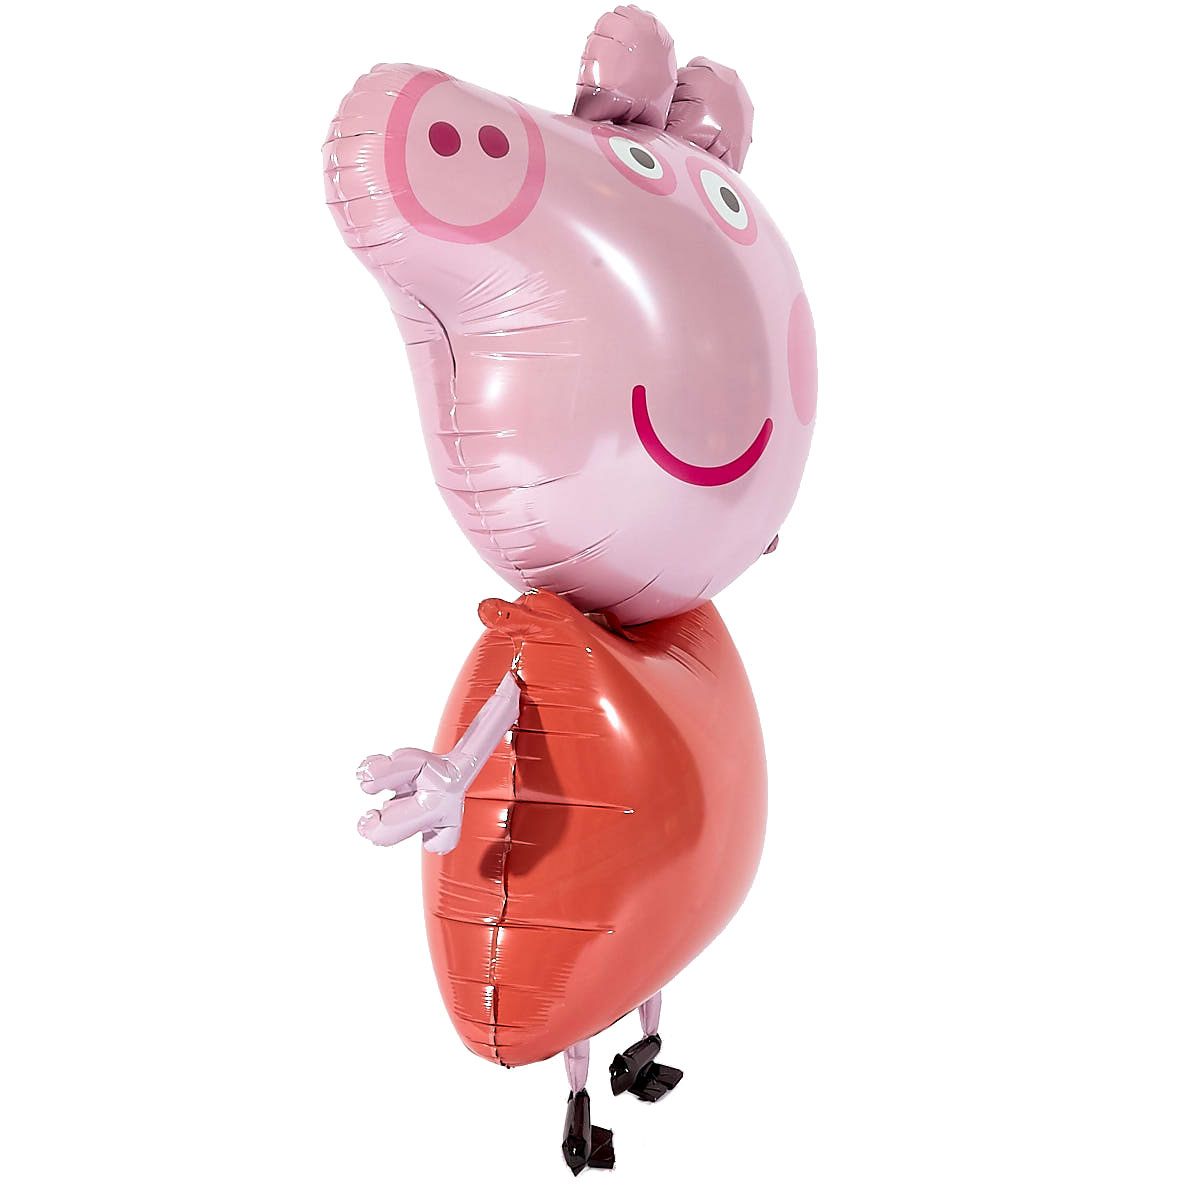 Peppa Pig Helium Airwalker Balloon (Deflated)